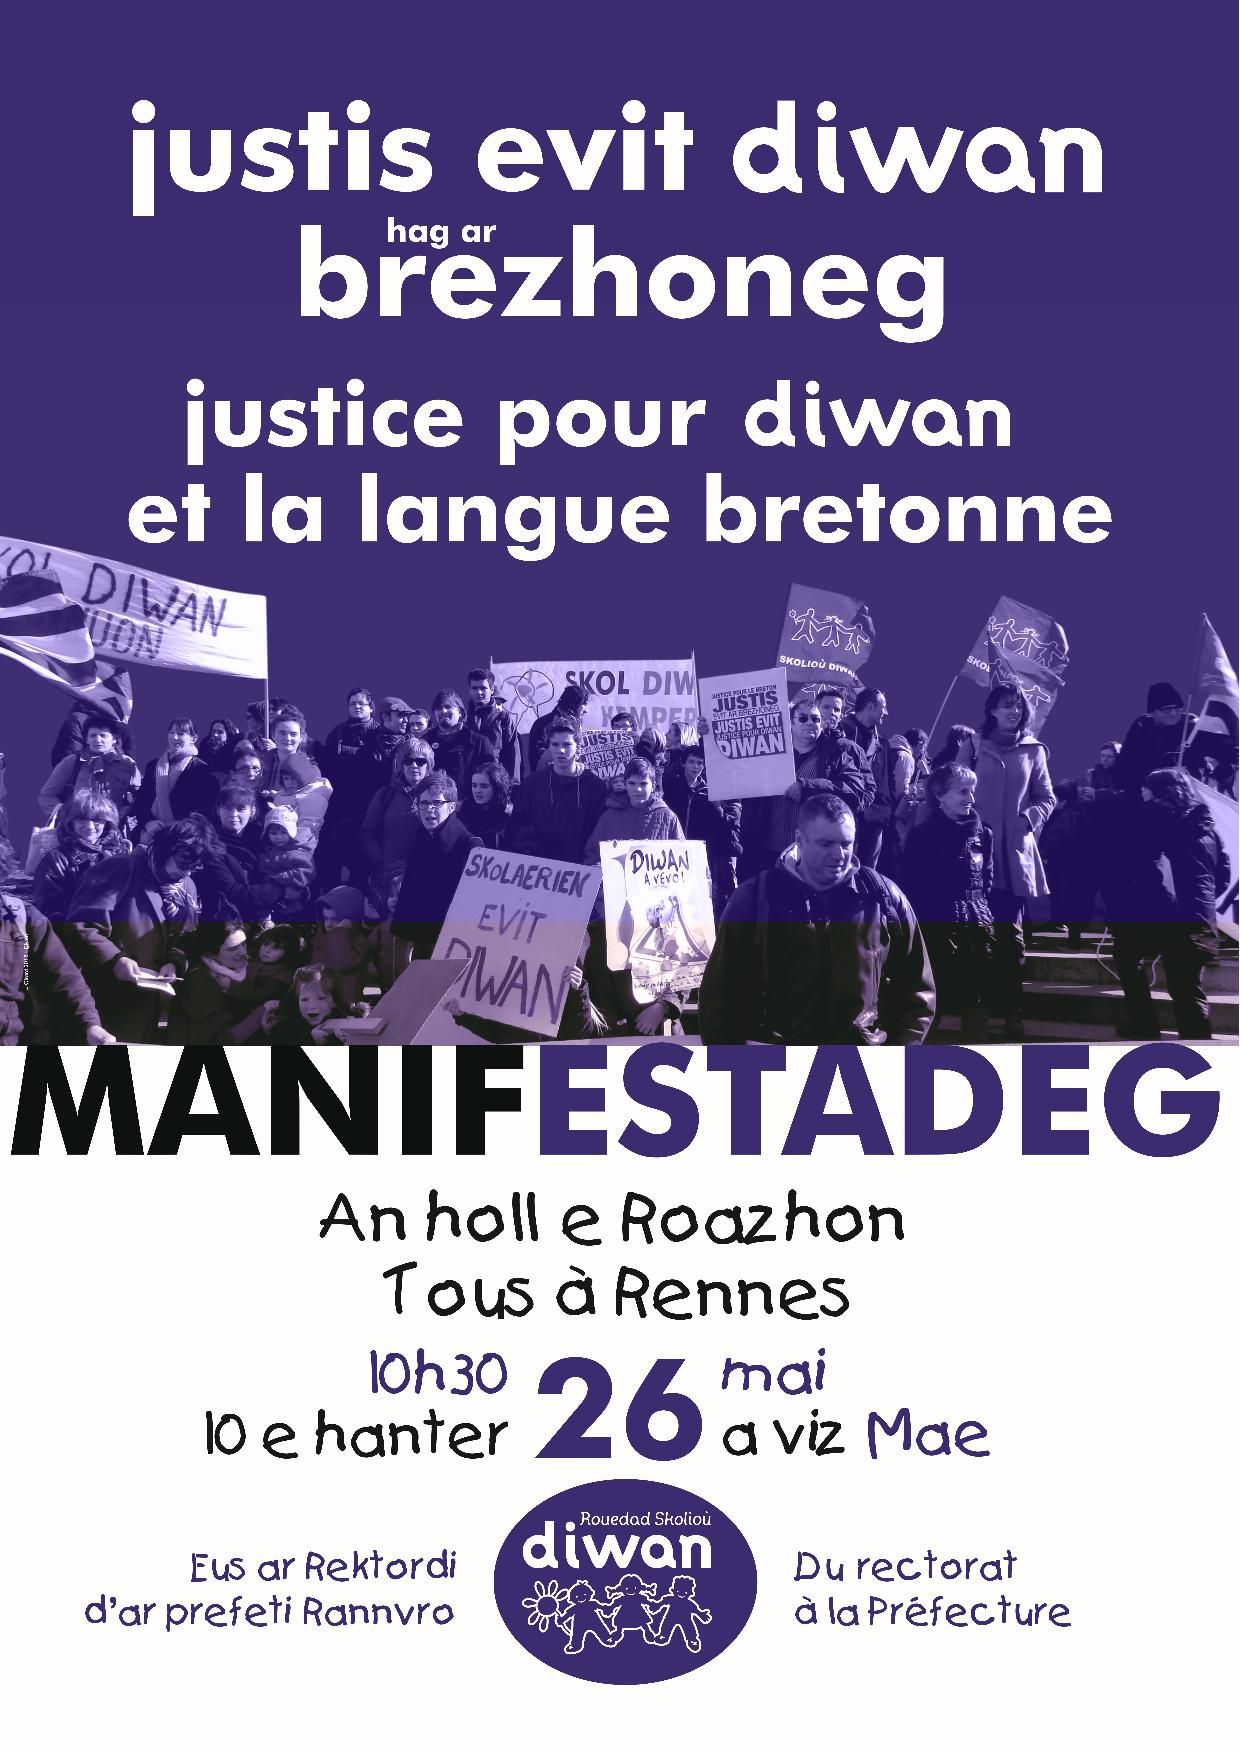 Manifestateg Roazhon 26/05/18 – Manifestation Rennes 26/05/18